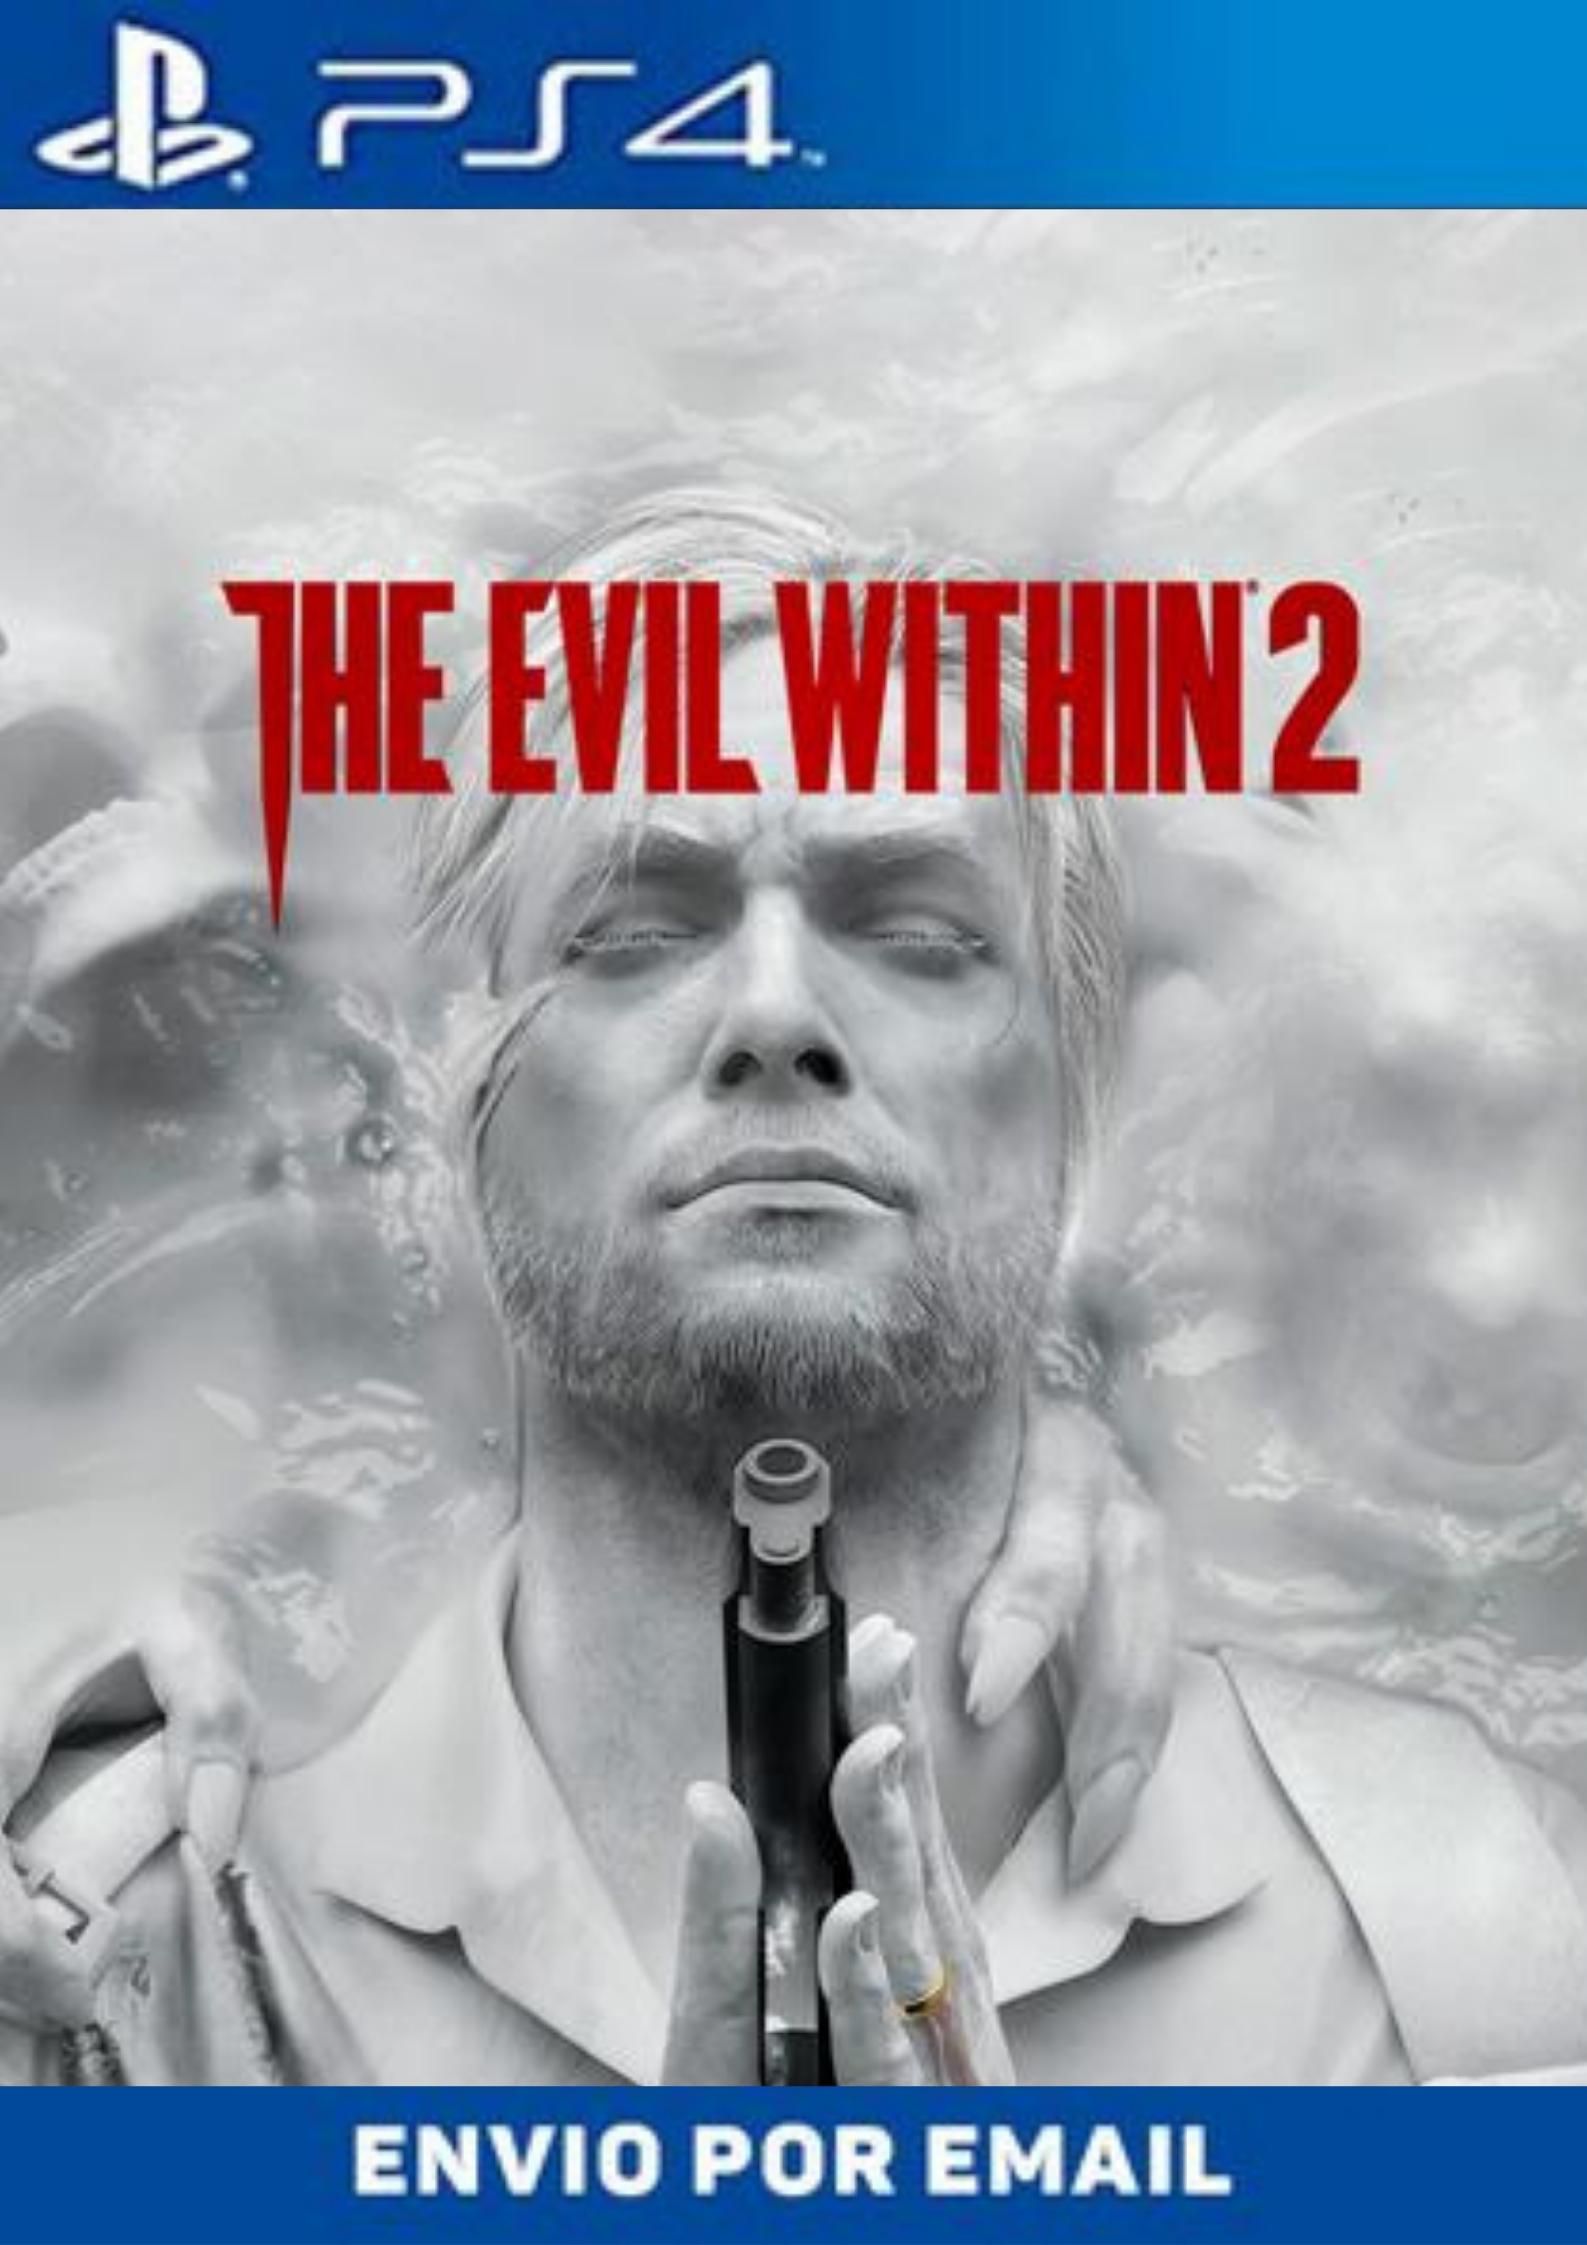 USADO: Jogo The Evil Within- PS4 - Mídia Física - Excelente em